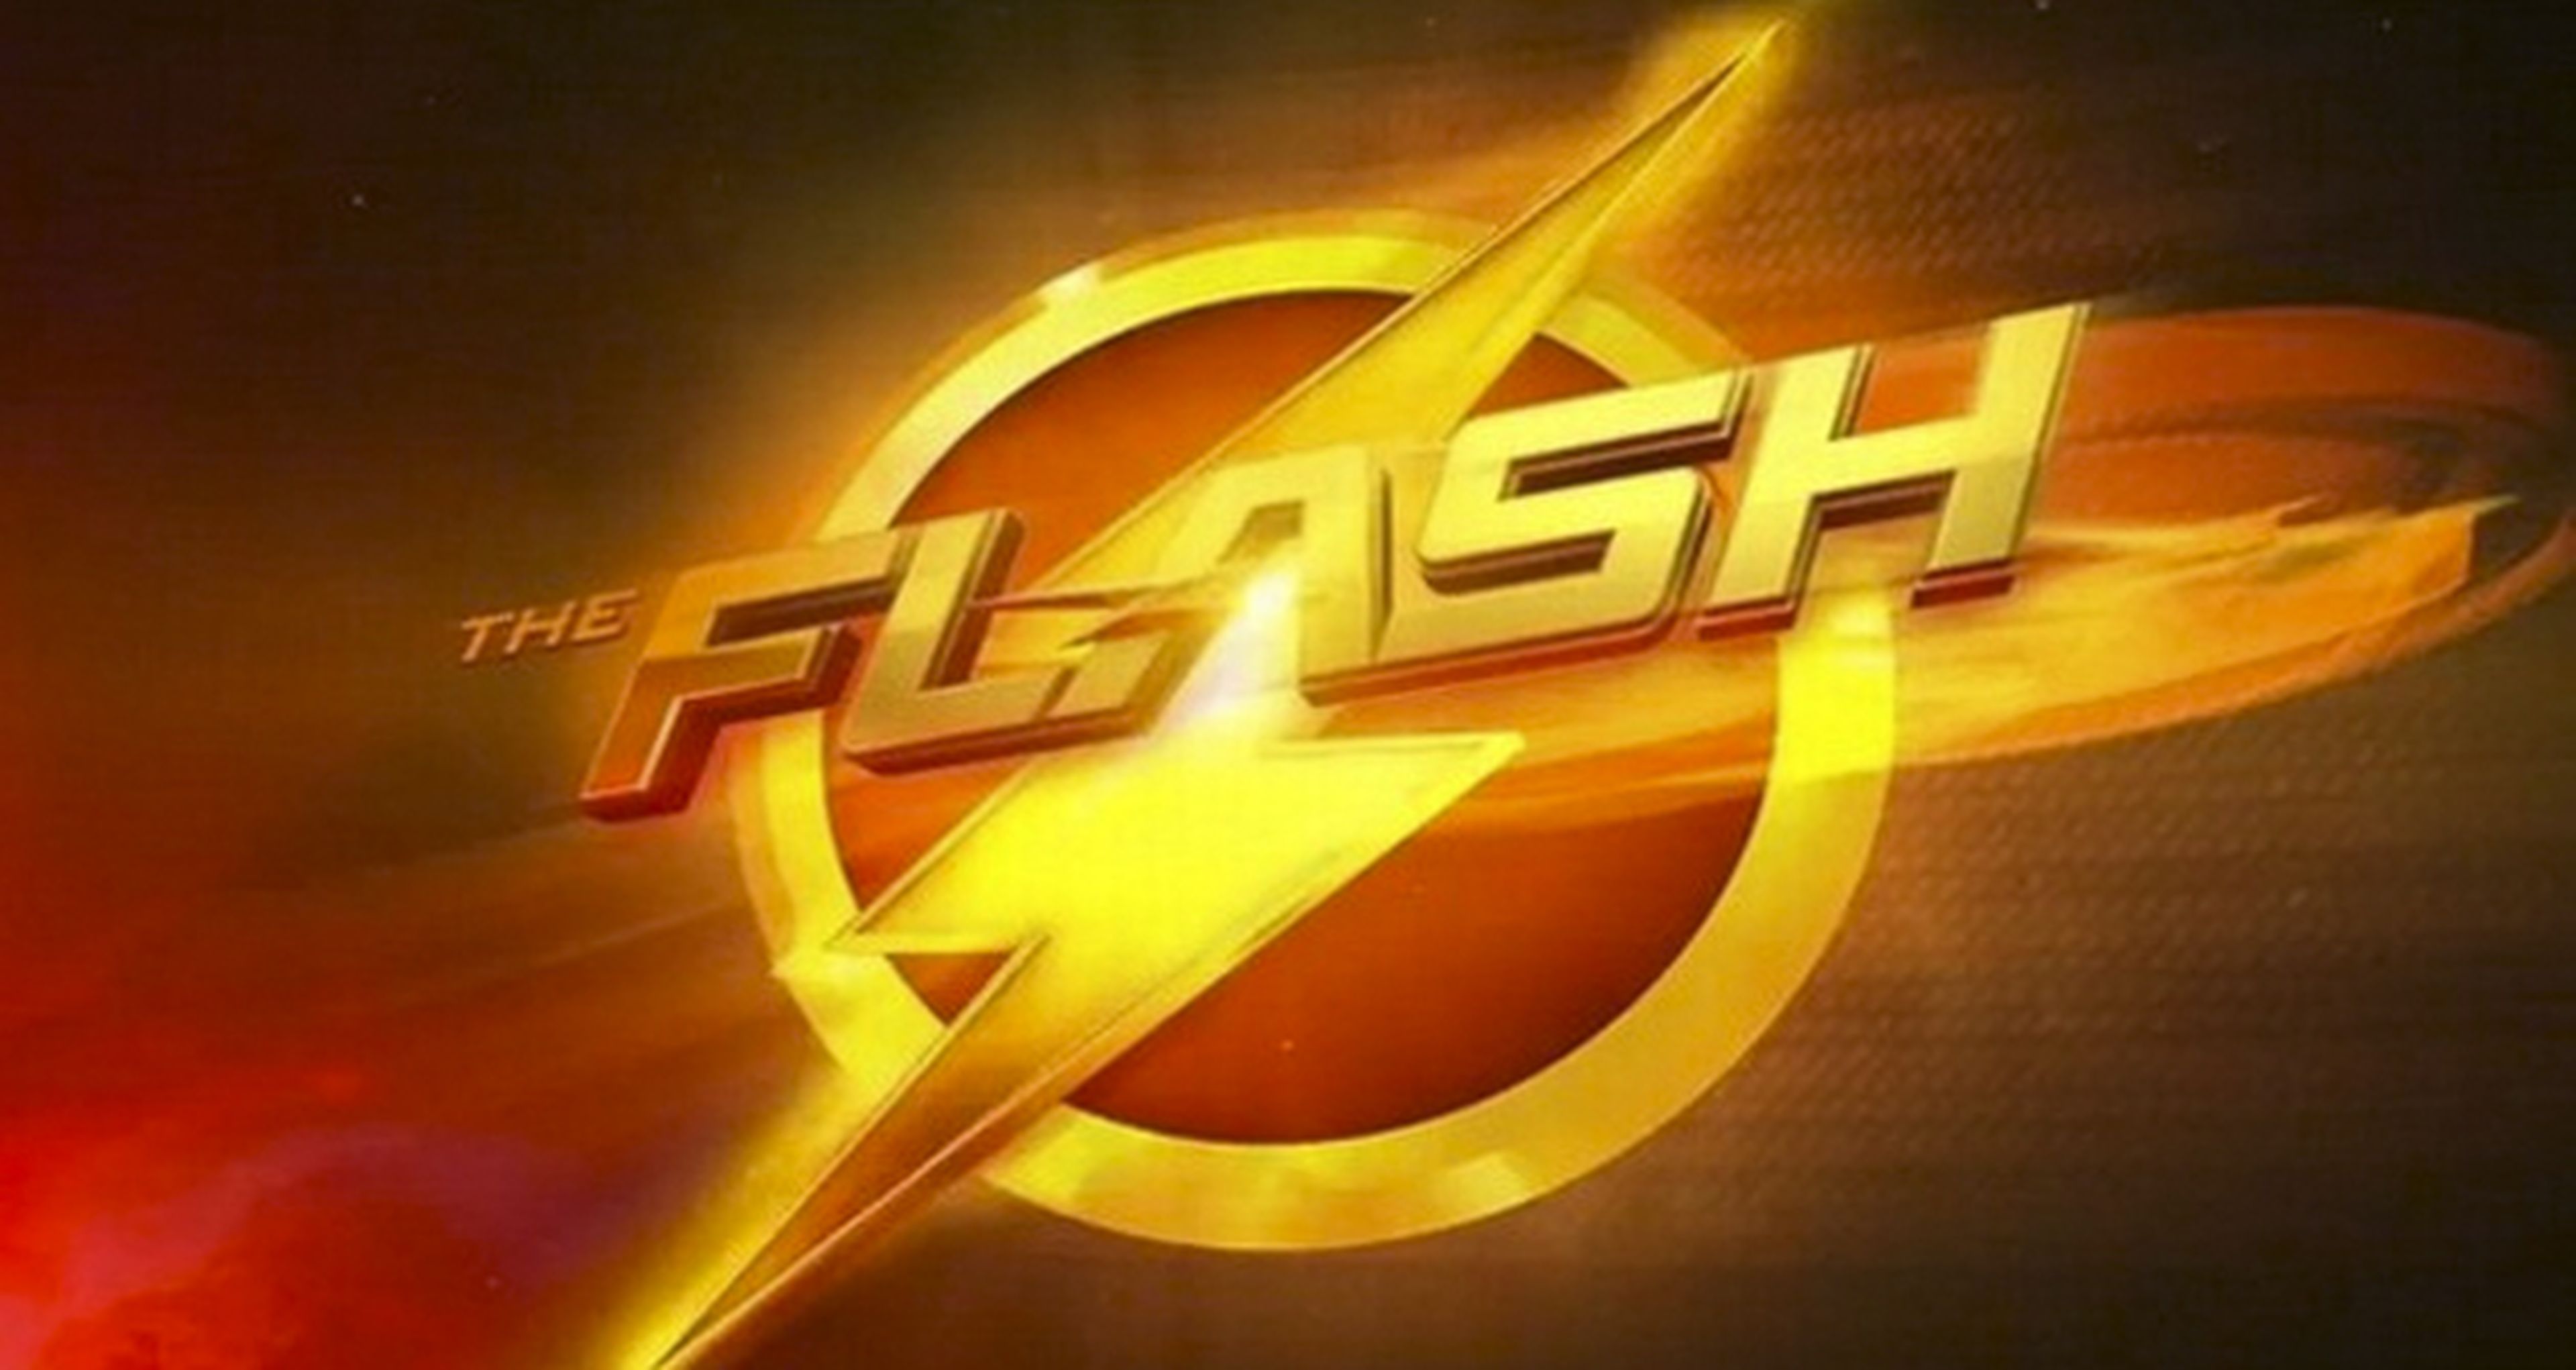 The Flash llega en abierto a Antena 3 este lunes